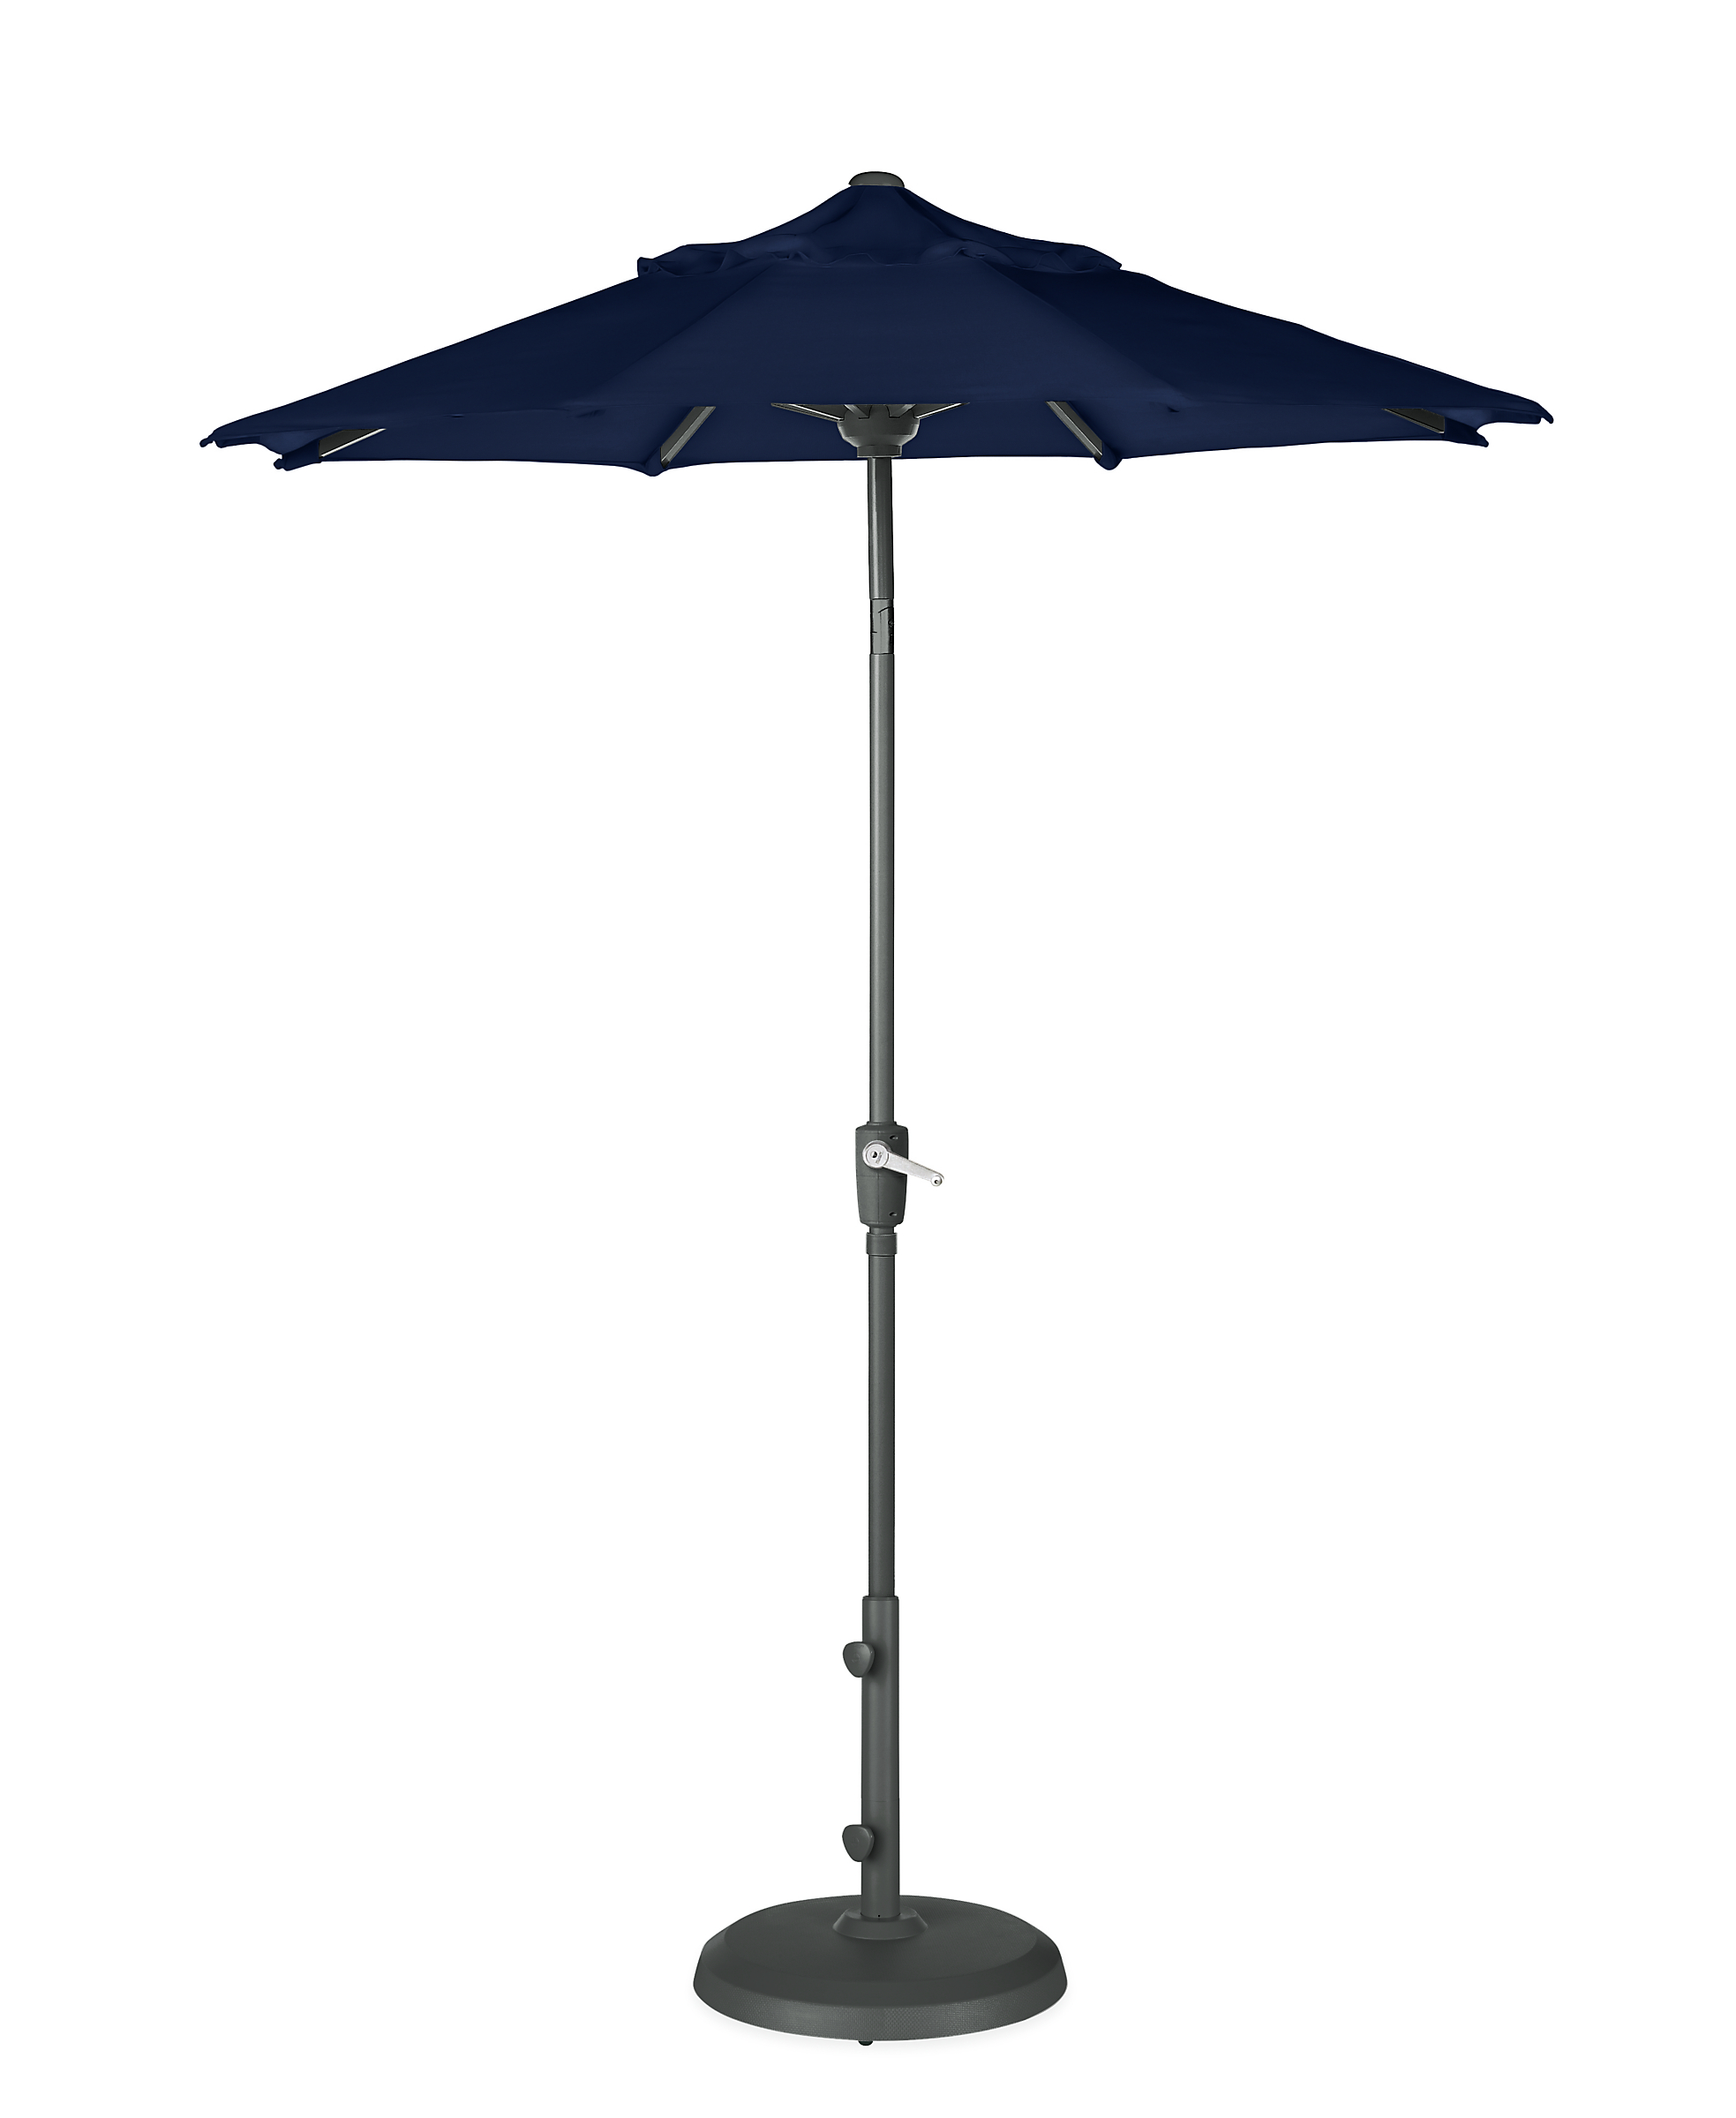 Maui 7.5' Round Patio Umbrella in Sunbrella Canvas Navy with Graphite Base